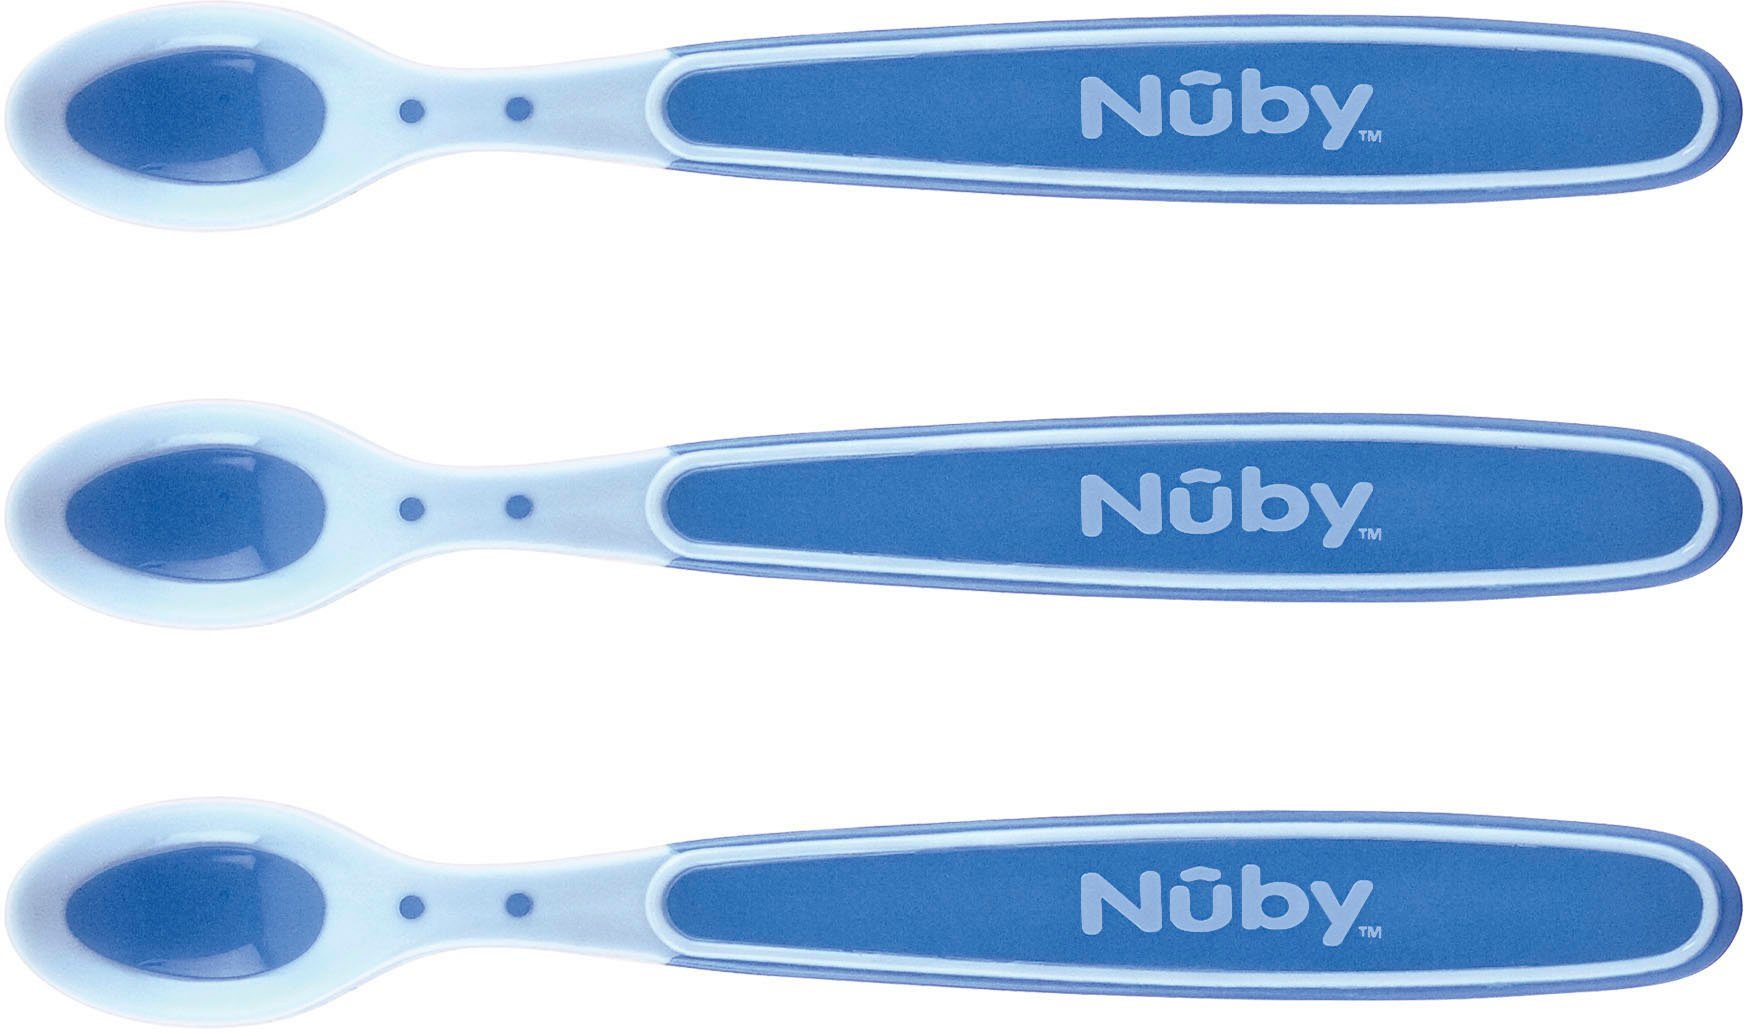 Nuby Kinderlöffel Breilöffel Soft Flex, 3er Set, blau (3 Stück), mit Wärmesensor